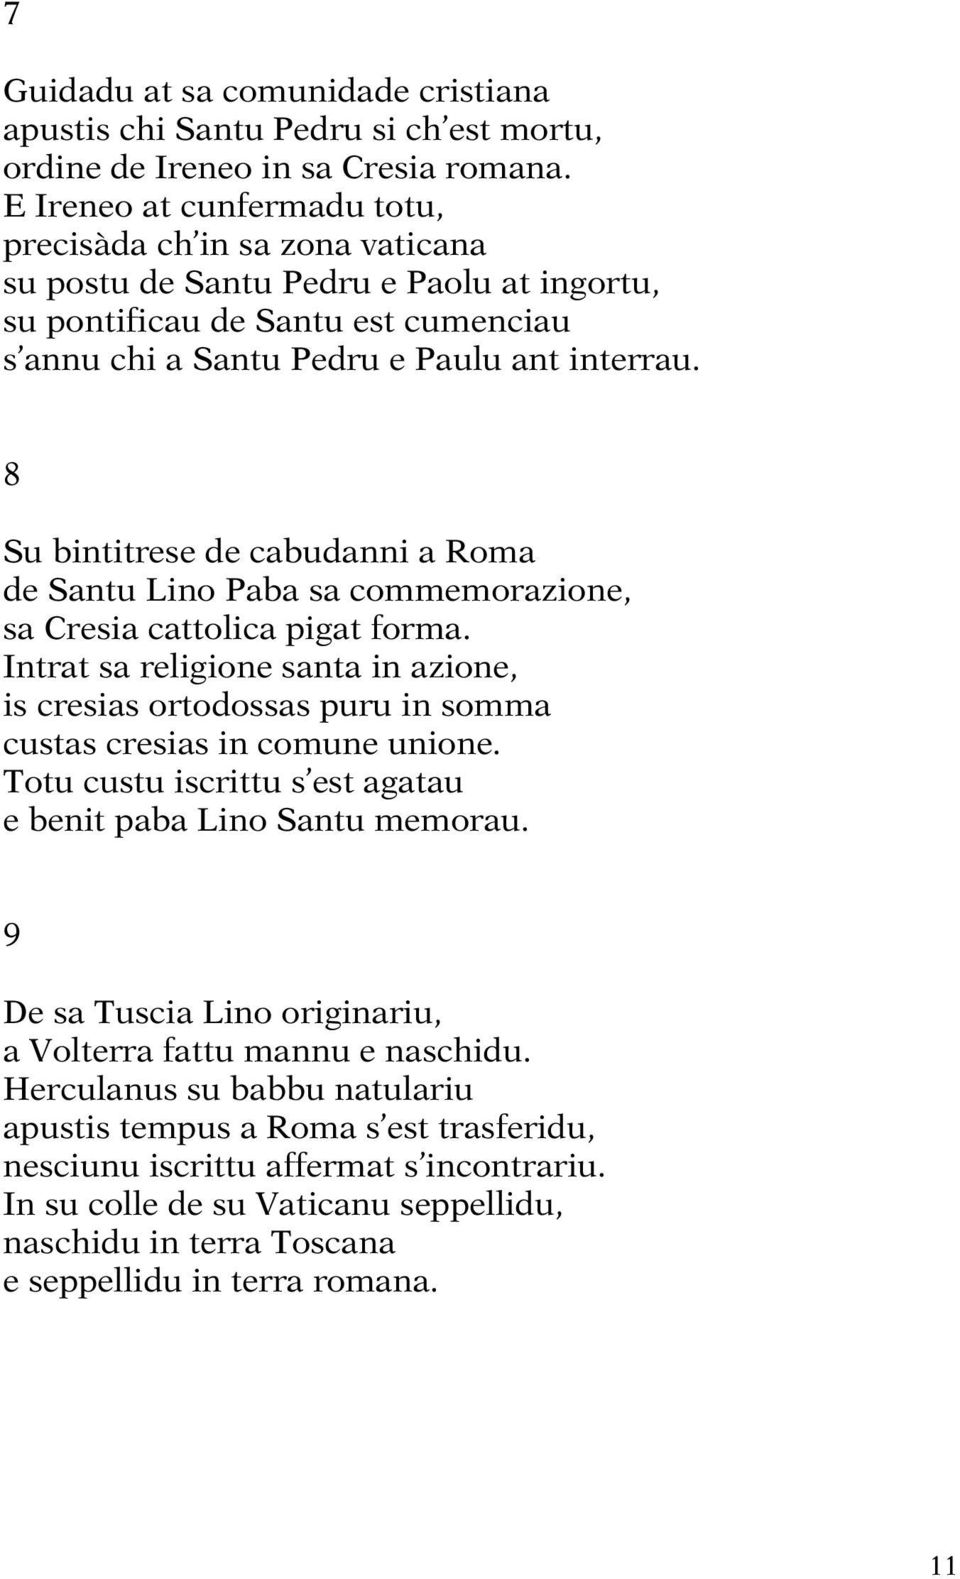 8 Su bintitrese de cabudanni a Roma de Santu Lino Paba sa commemorazione, sa Cresia cattolica pigat forma.